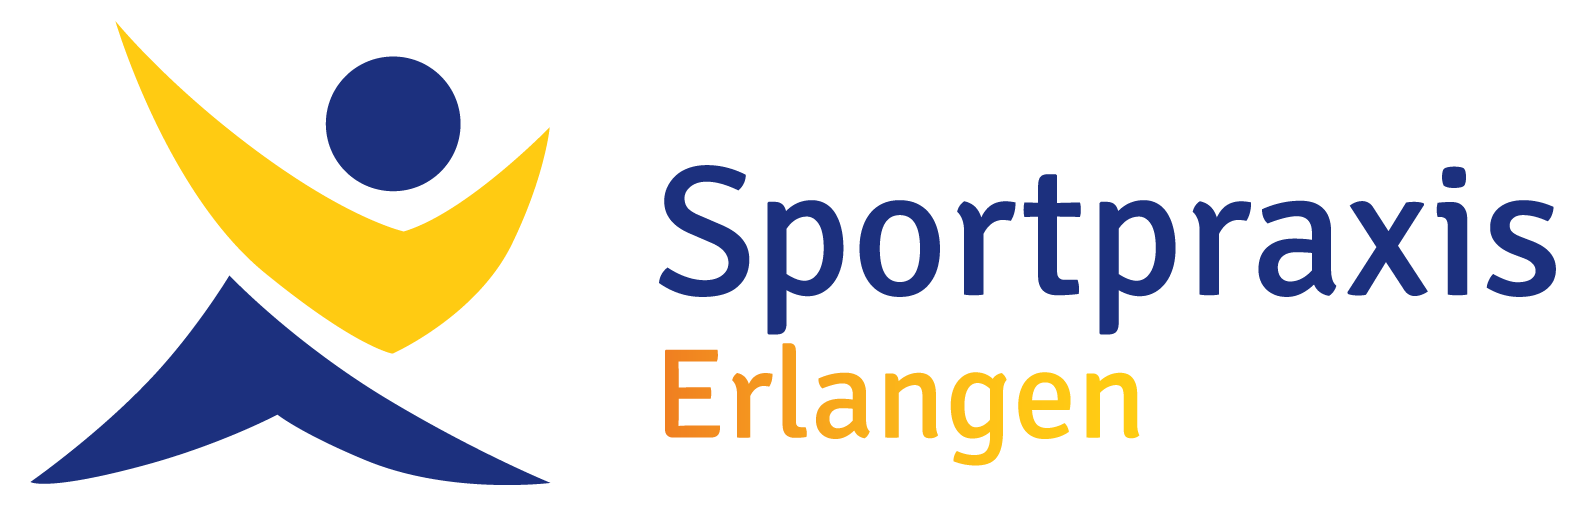 Sportpraxis Erlangen